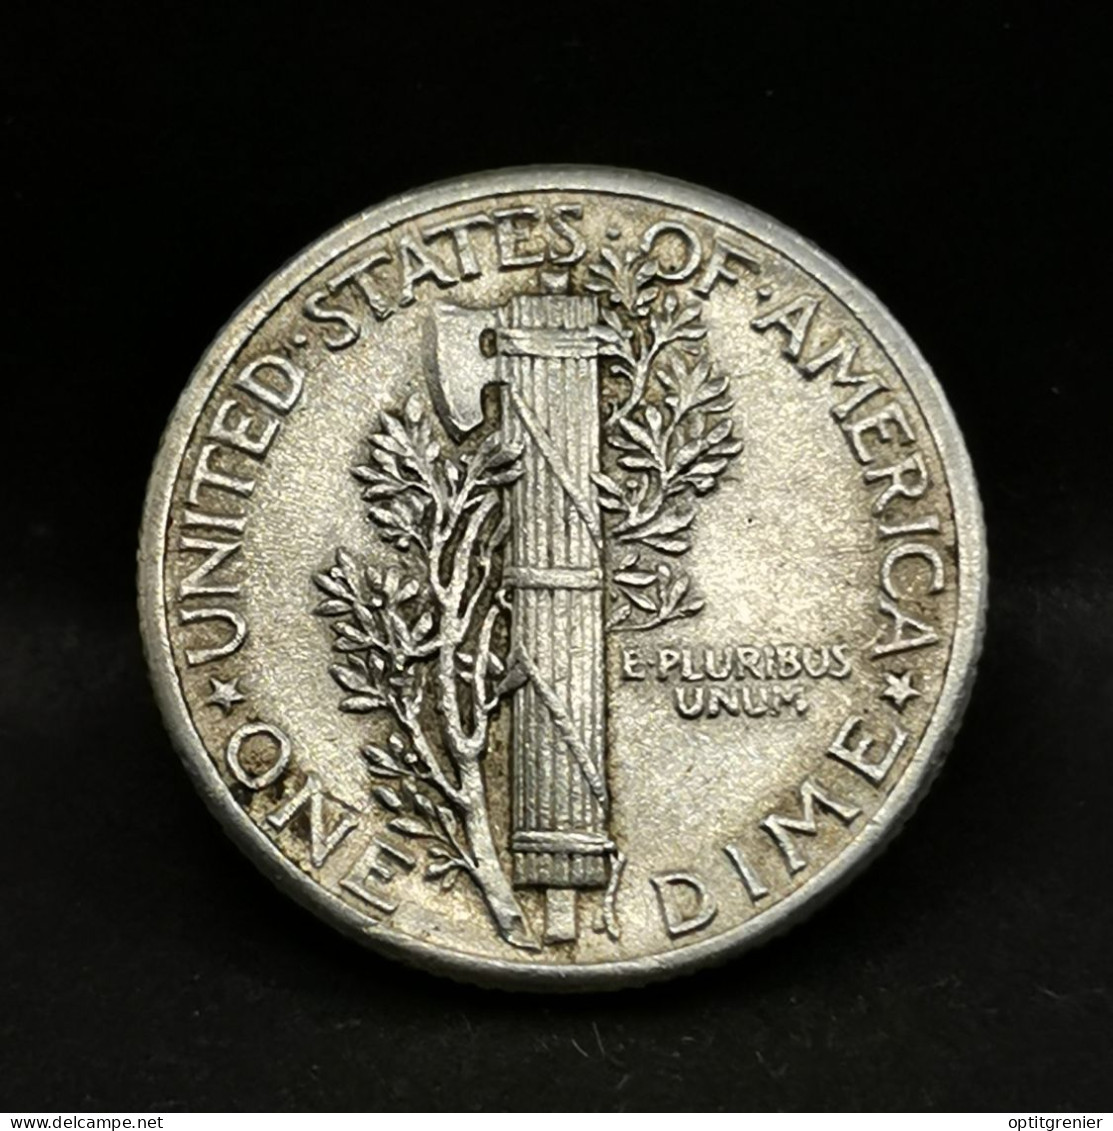 1 MERCURY DIME 10 CENTS ARGENT 1940 PHILADELPHIE USA / SILVER - 1916-1945: Mercury (kwik)